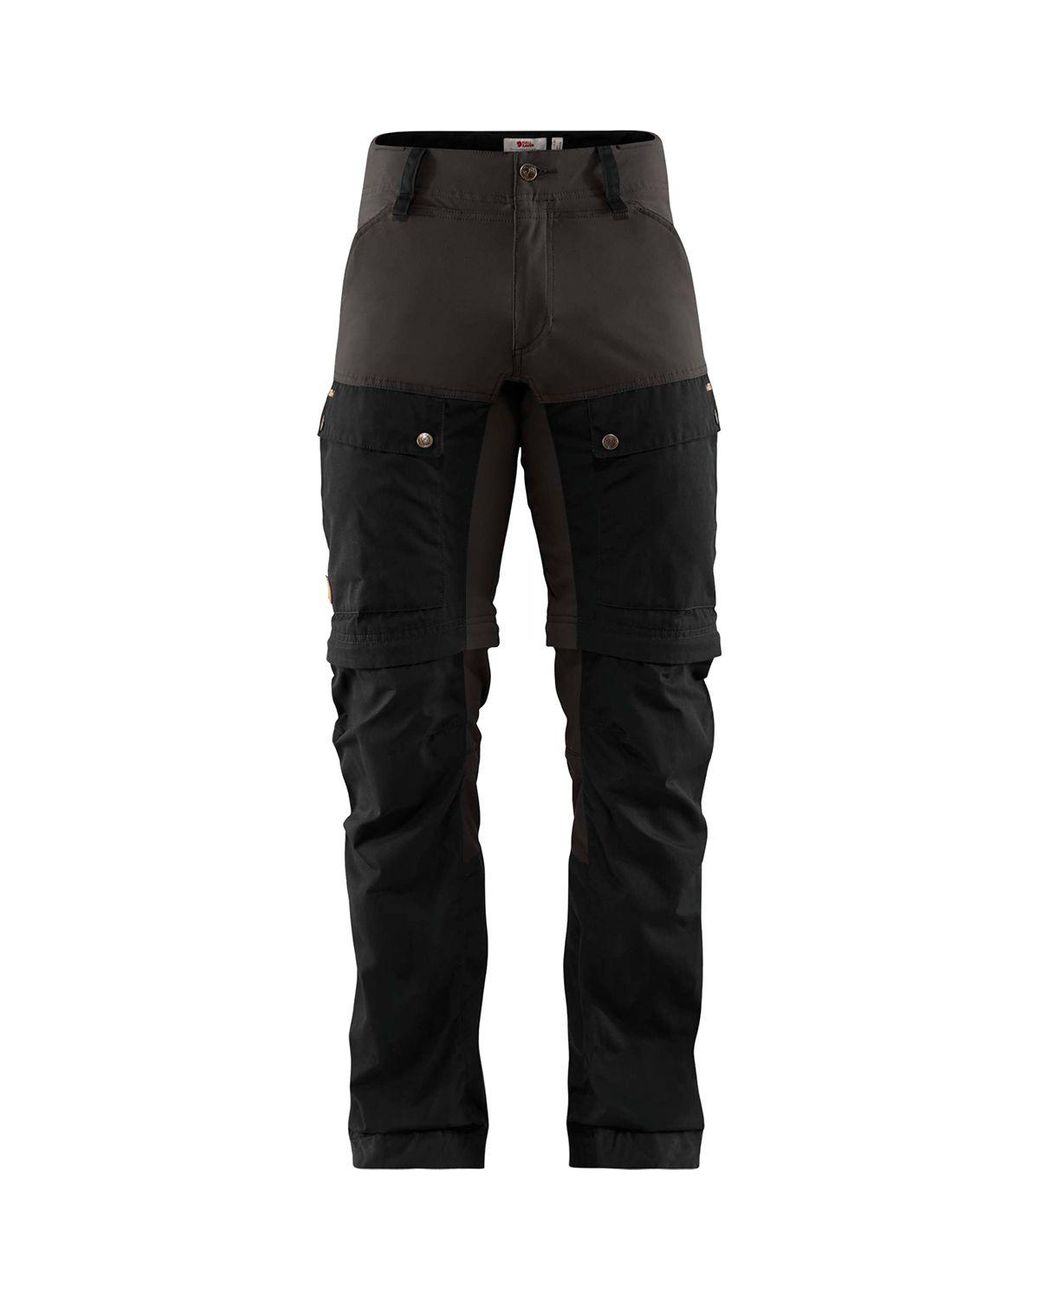 Fjallraven Keb Gaiter Long Trouser in Black/Stone Grey (Black) for Men |  Lyst